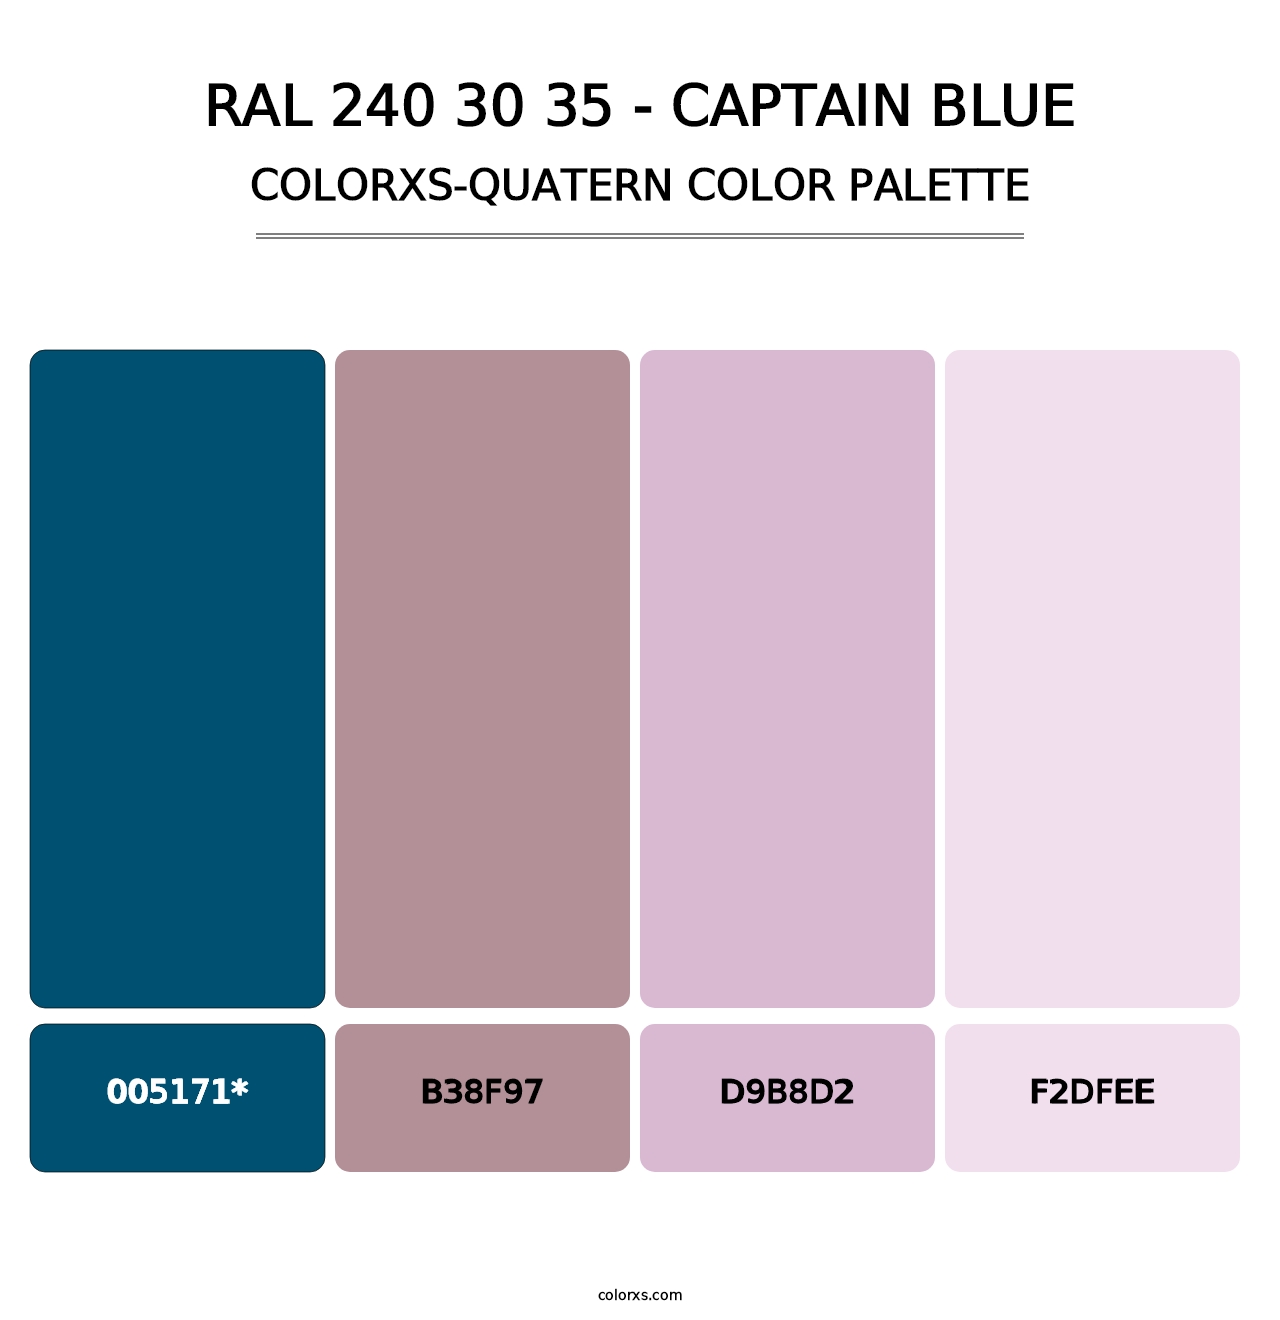 RAL 240 30 35 - Captain Blue - Colorxs Quatern Palette